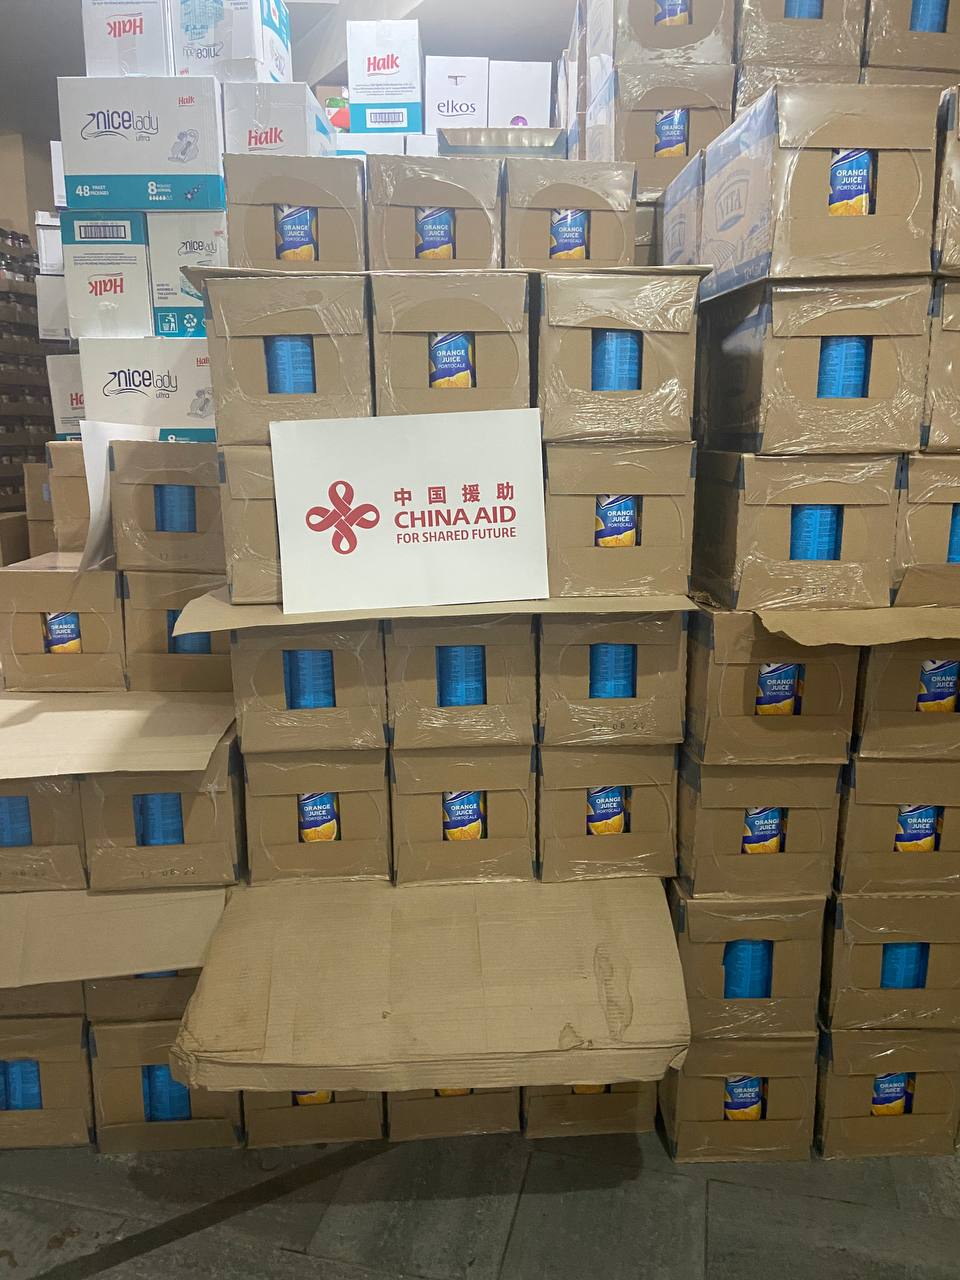 (ФОТО) Китай передал украинским беженцам в Кишиневе продукты на €200 тыс.